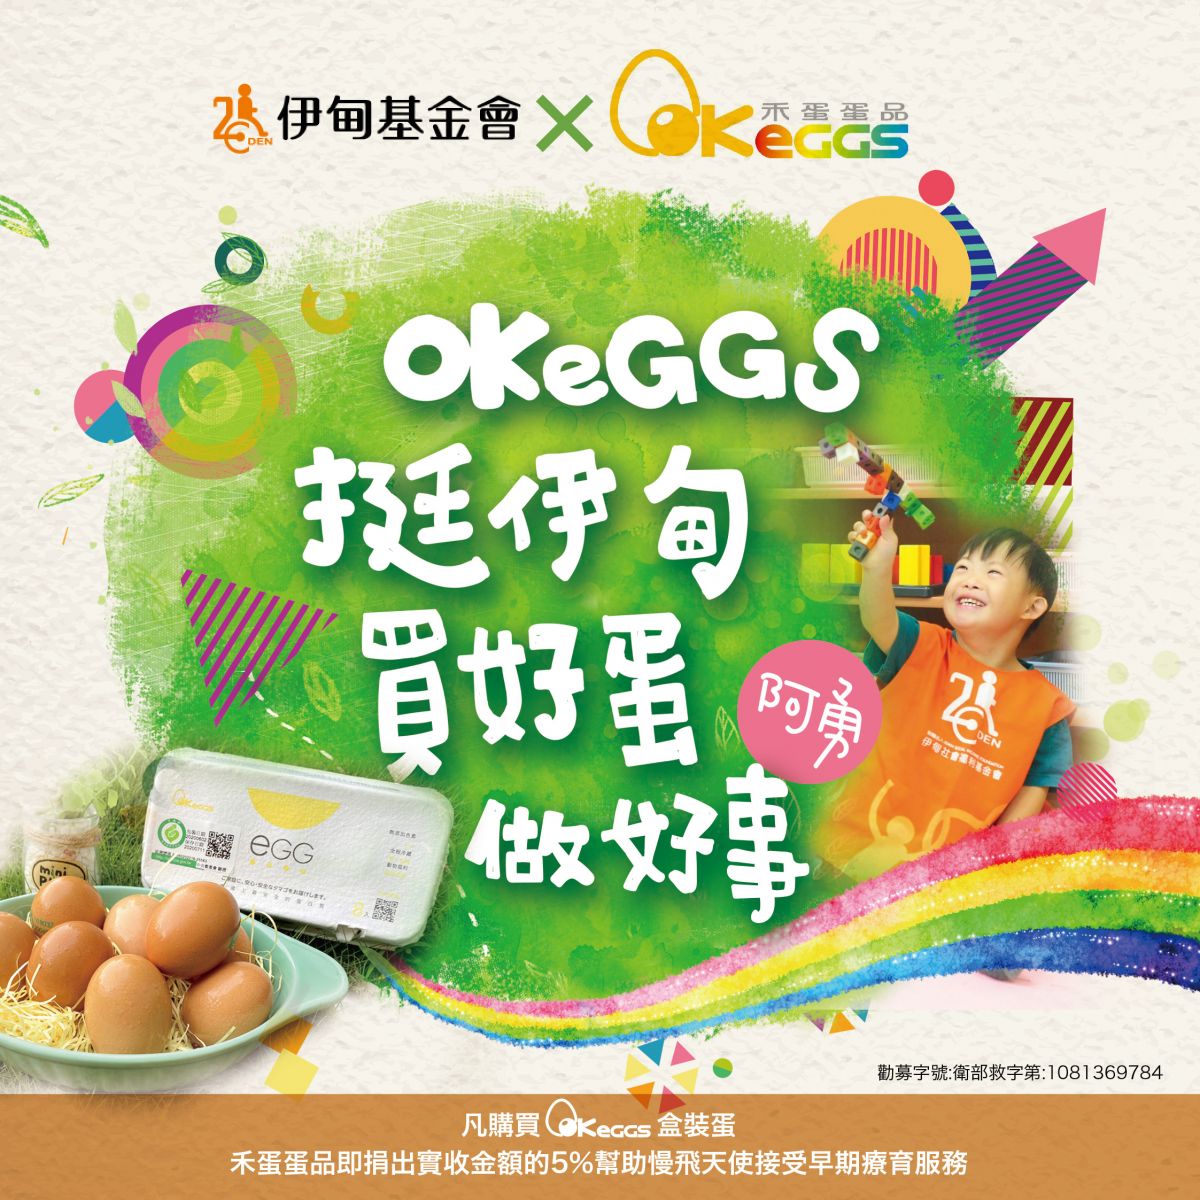 OKEGGS邀您一起買好蛋 做好事